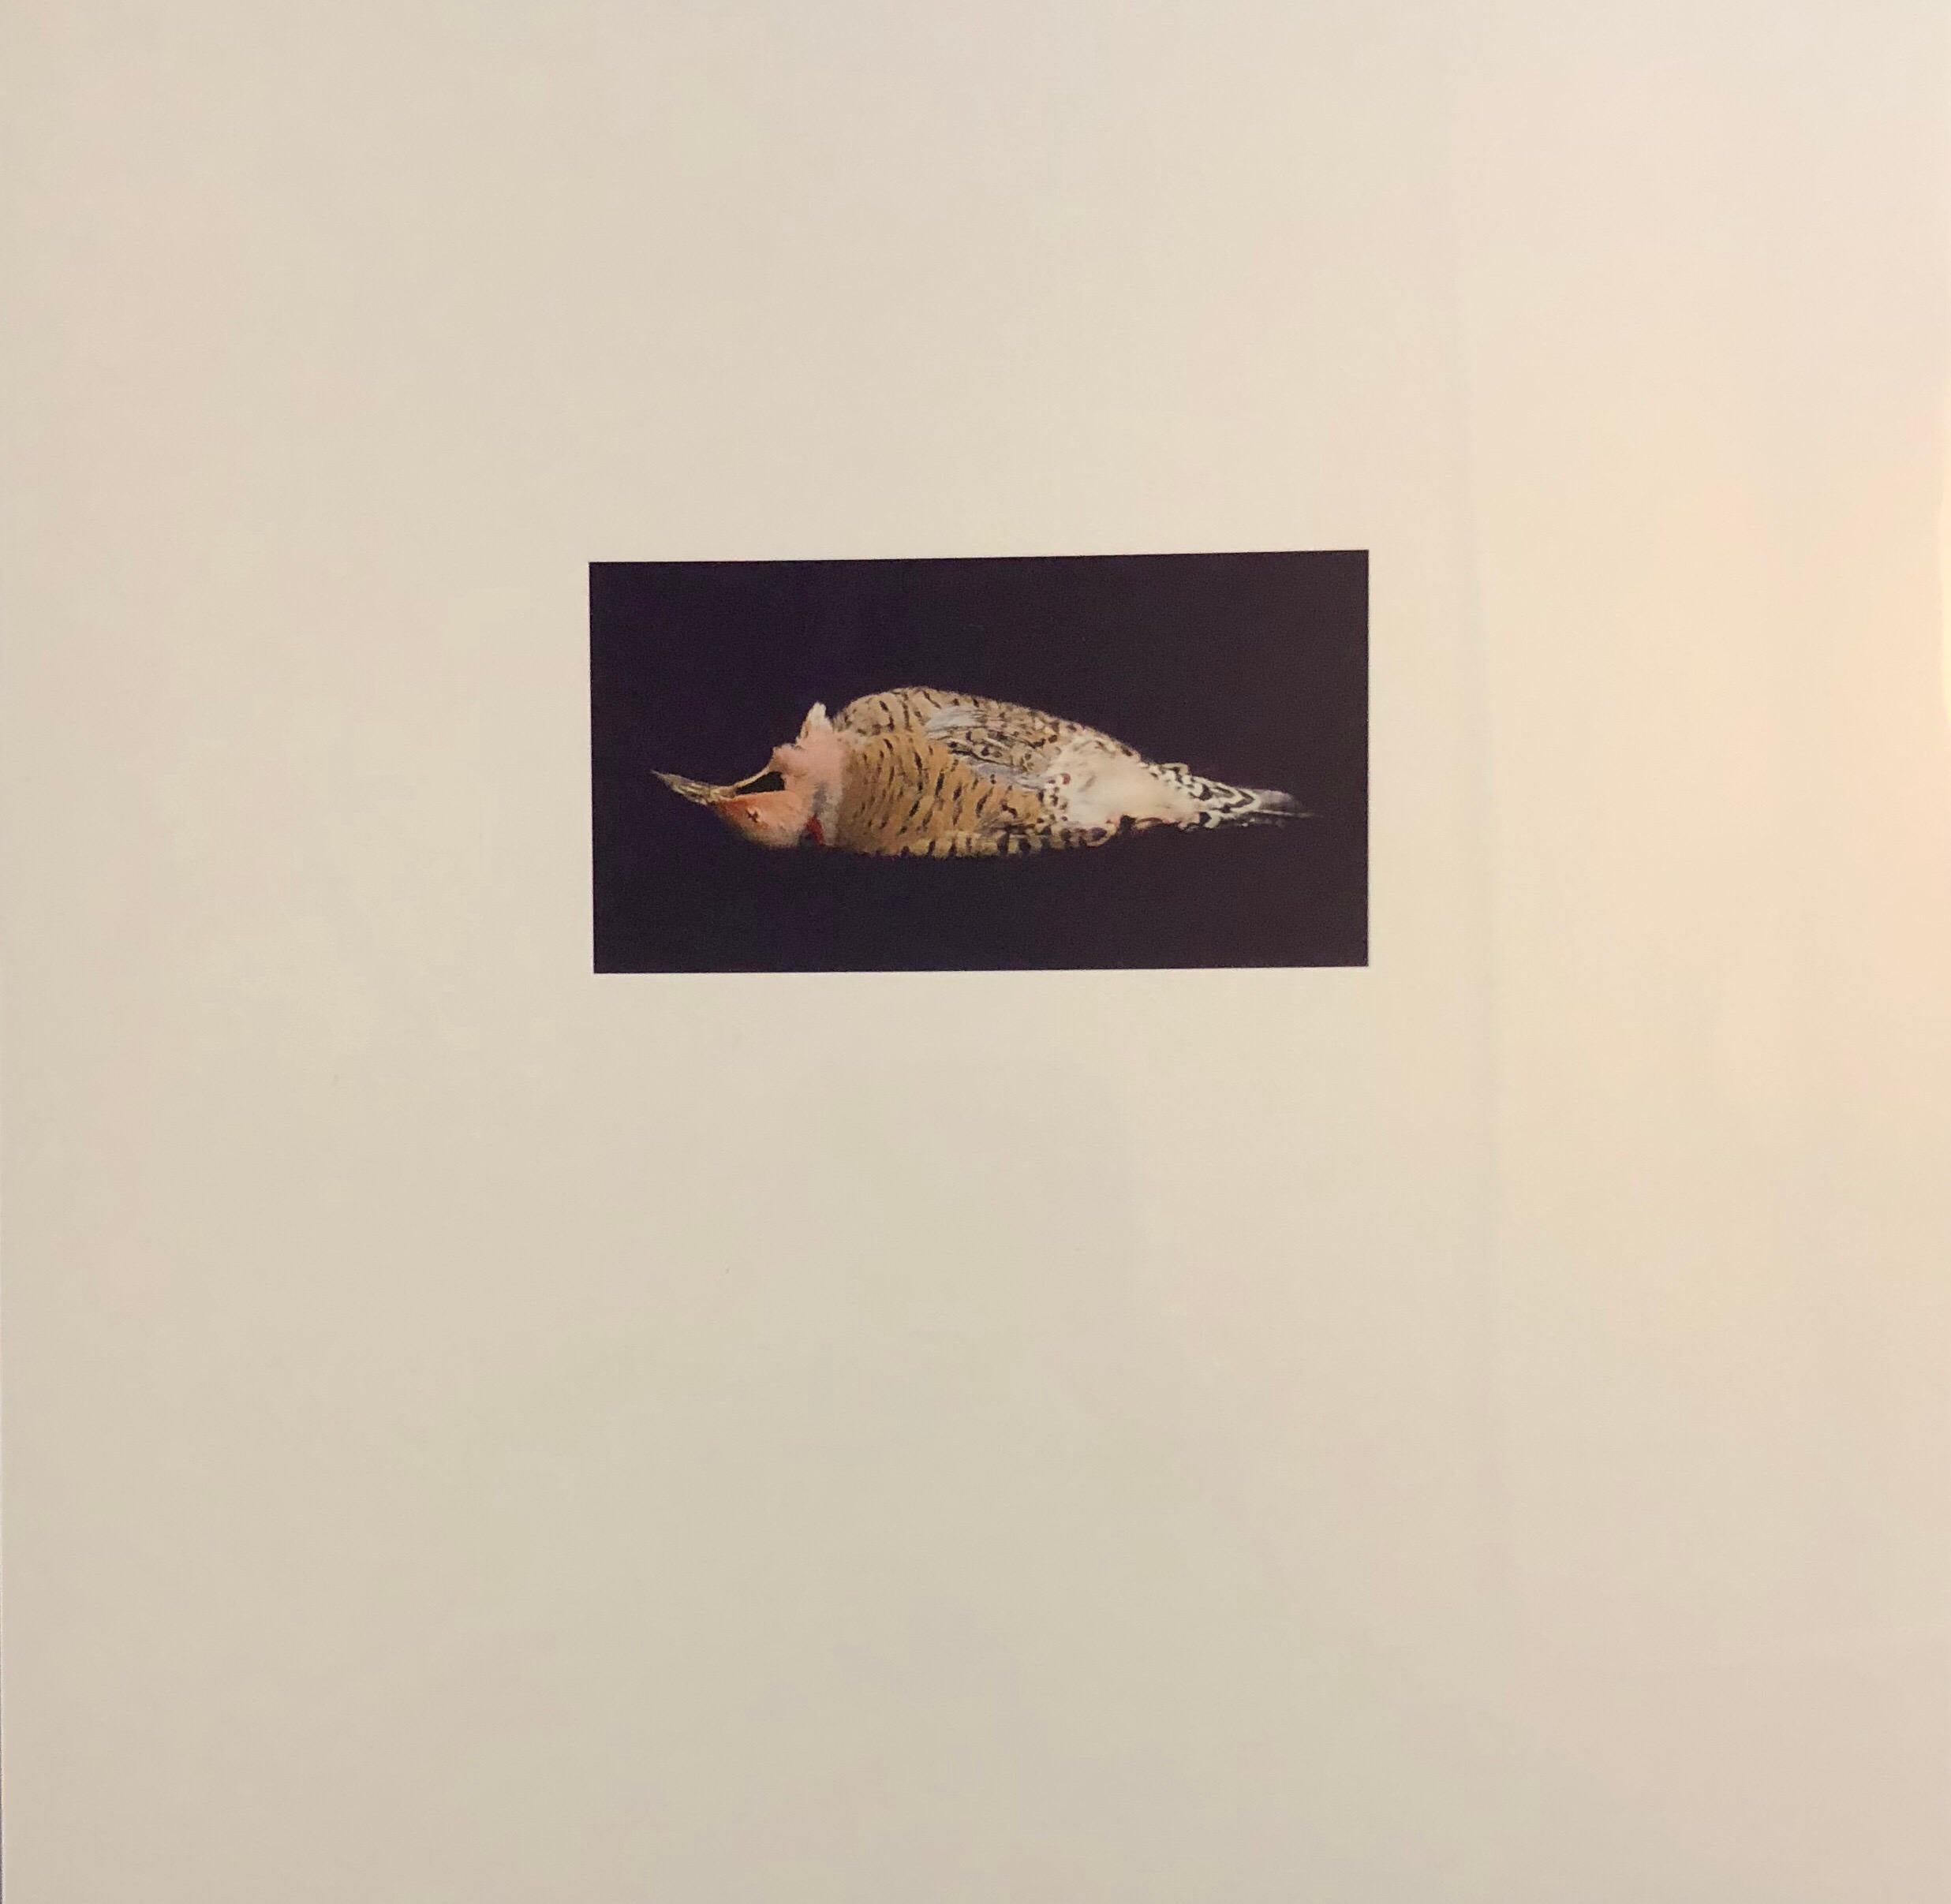 Color Photograph Brenda Zlamany - Oiseaux et photographies cibachromes, art conceptuel signé